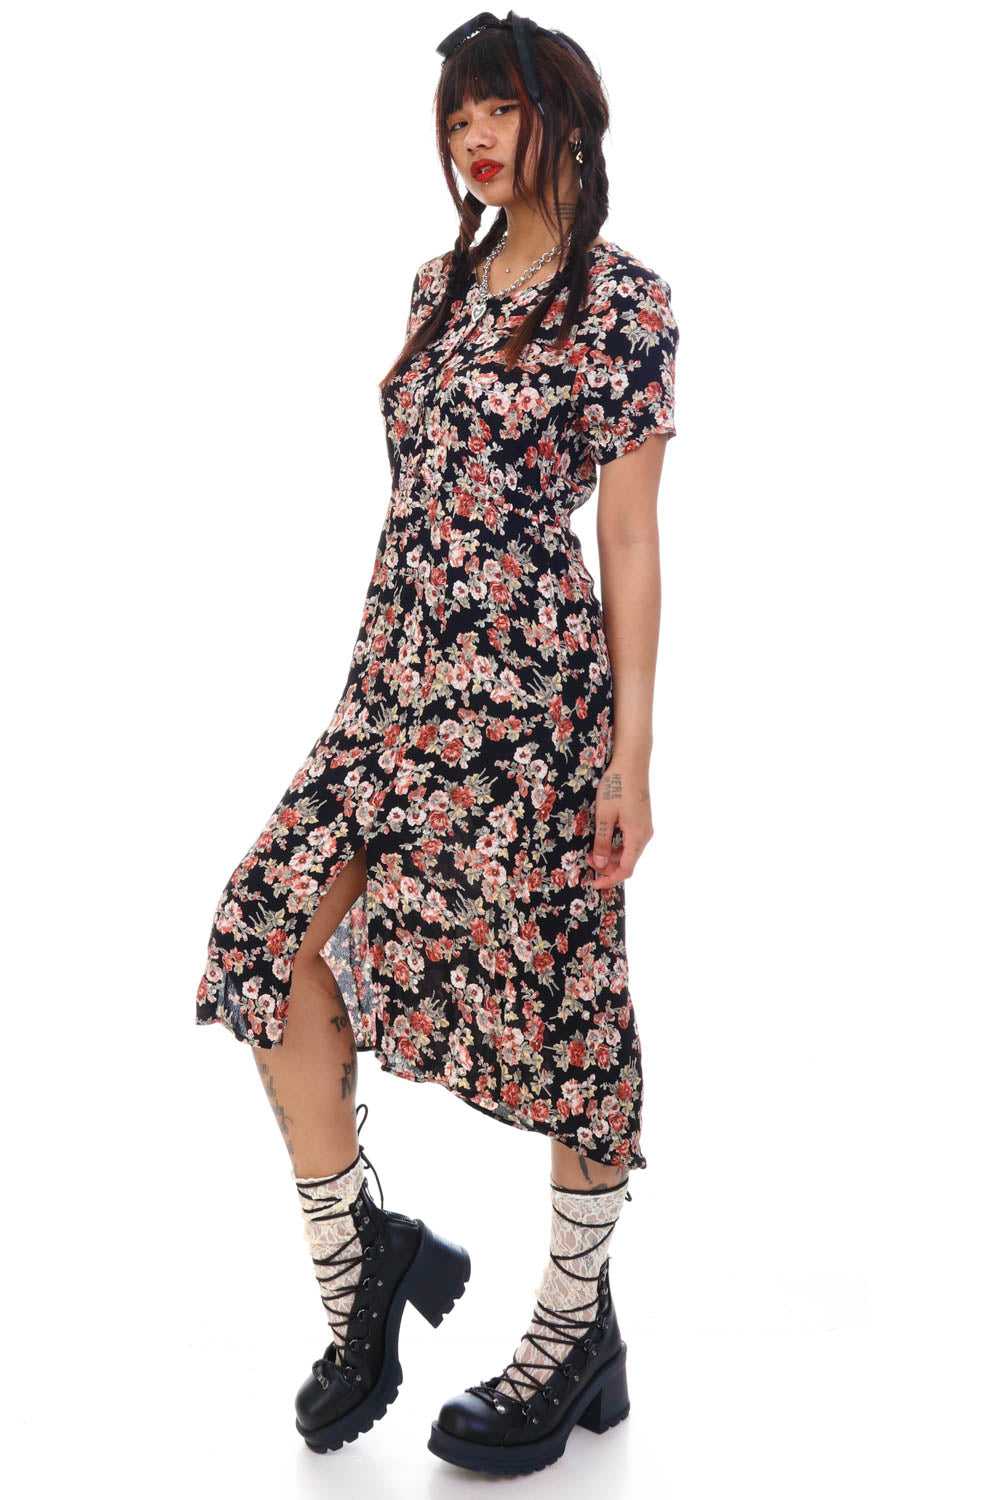 Vintage Y2K Grunge Floral Slit Dress - S/M - image 3